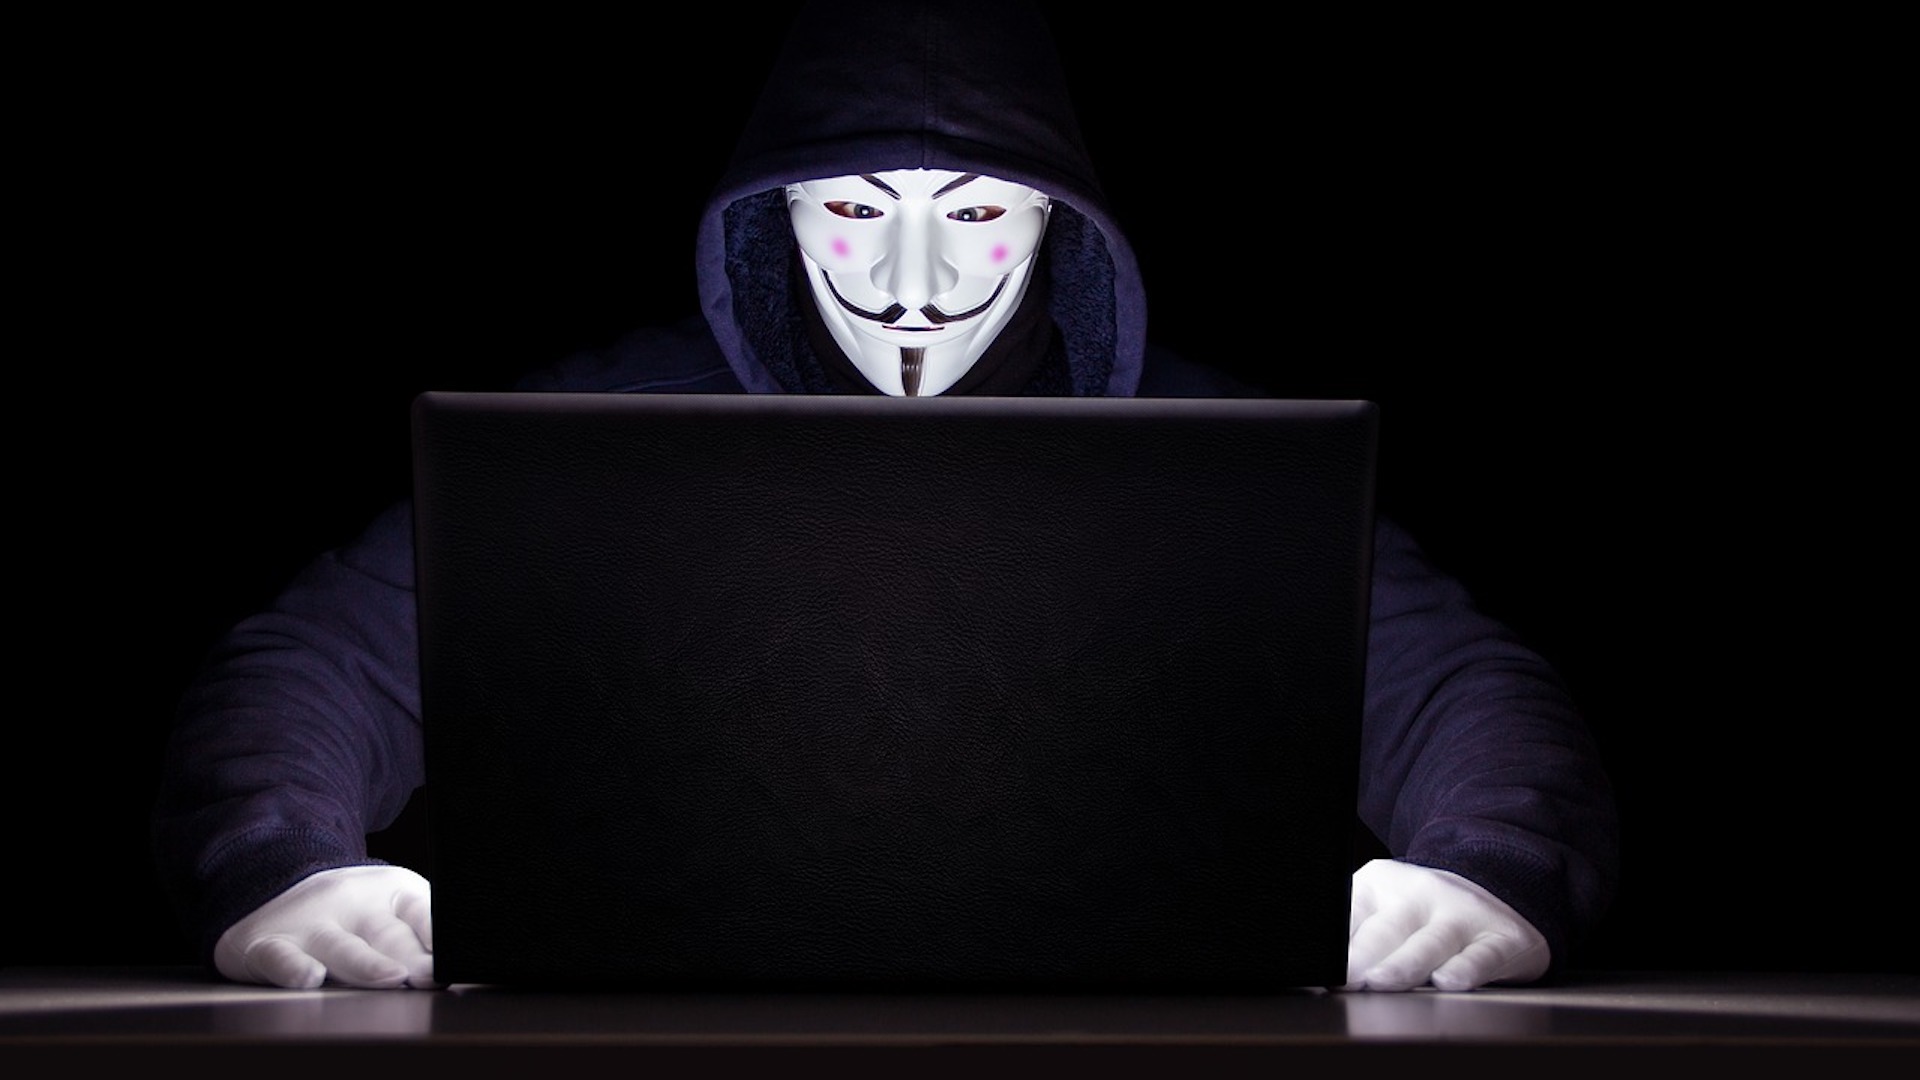 Avec Fawkes, l'université de Chicago a les même références que les Anonymous. // Source : Needpix